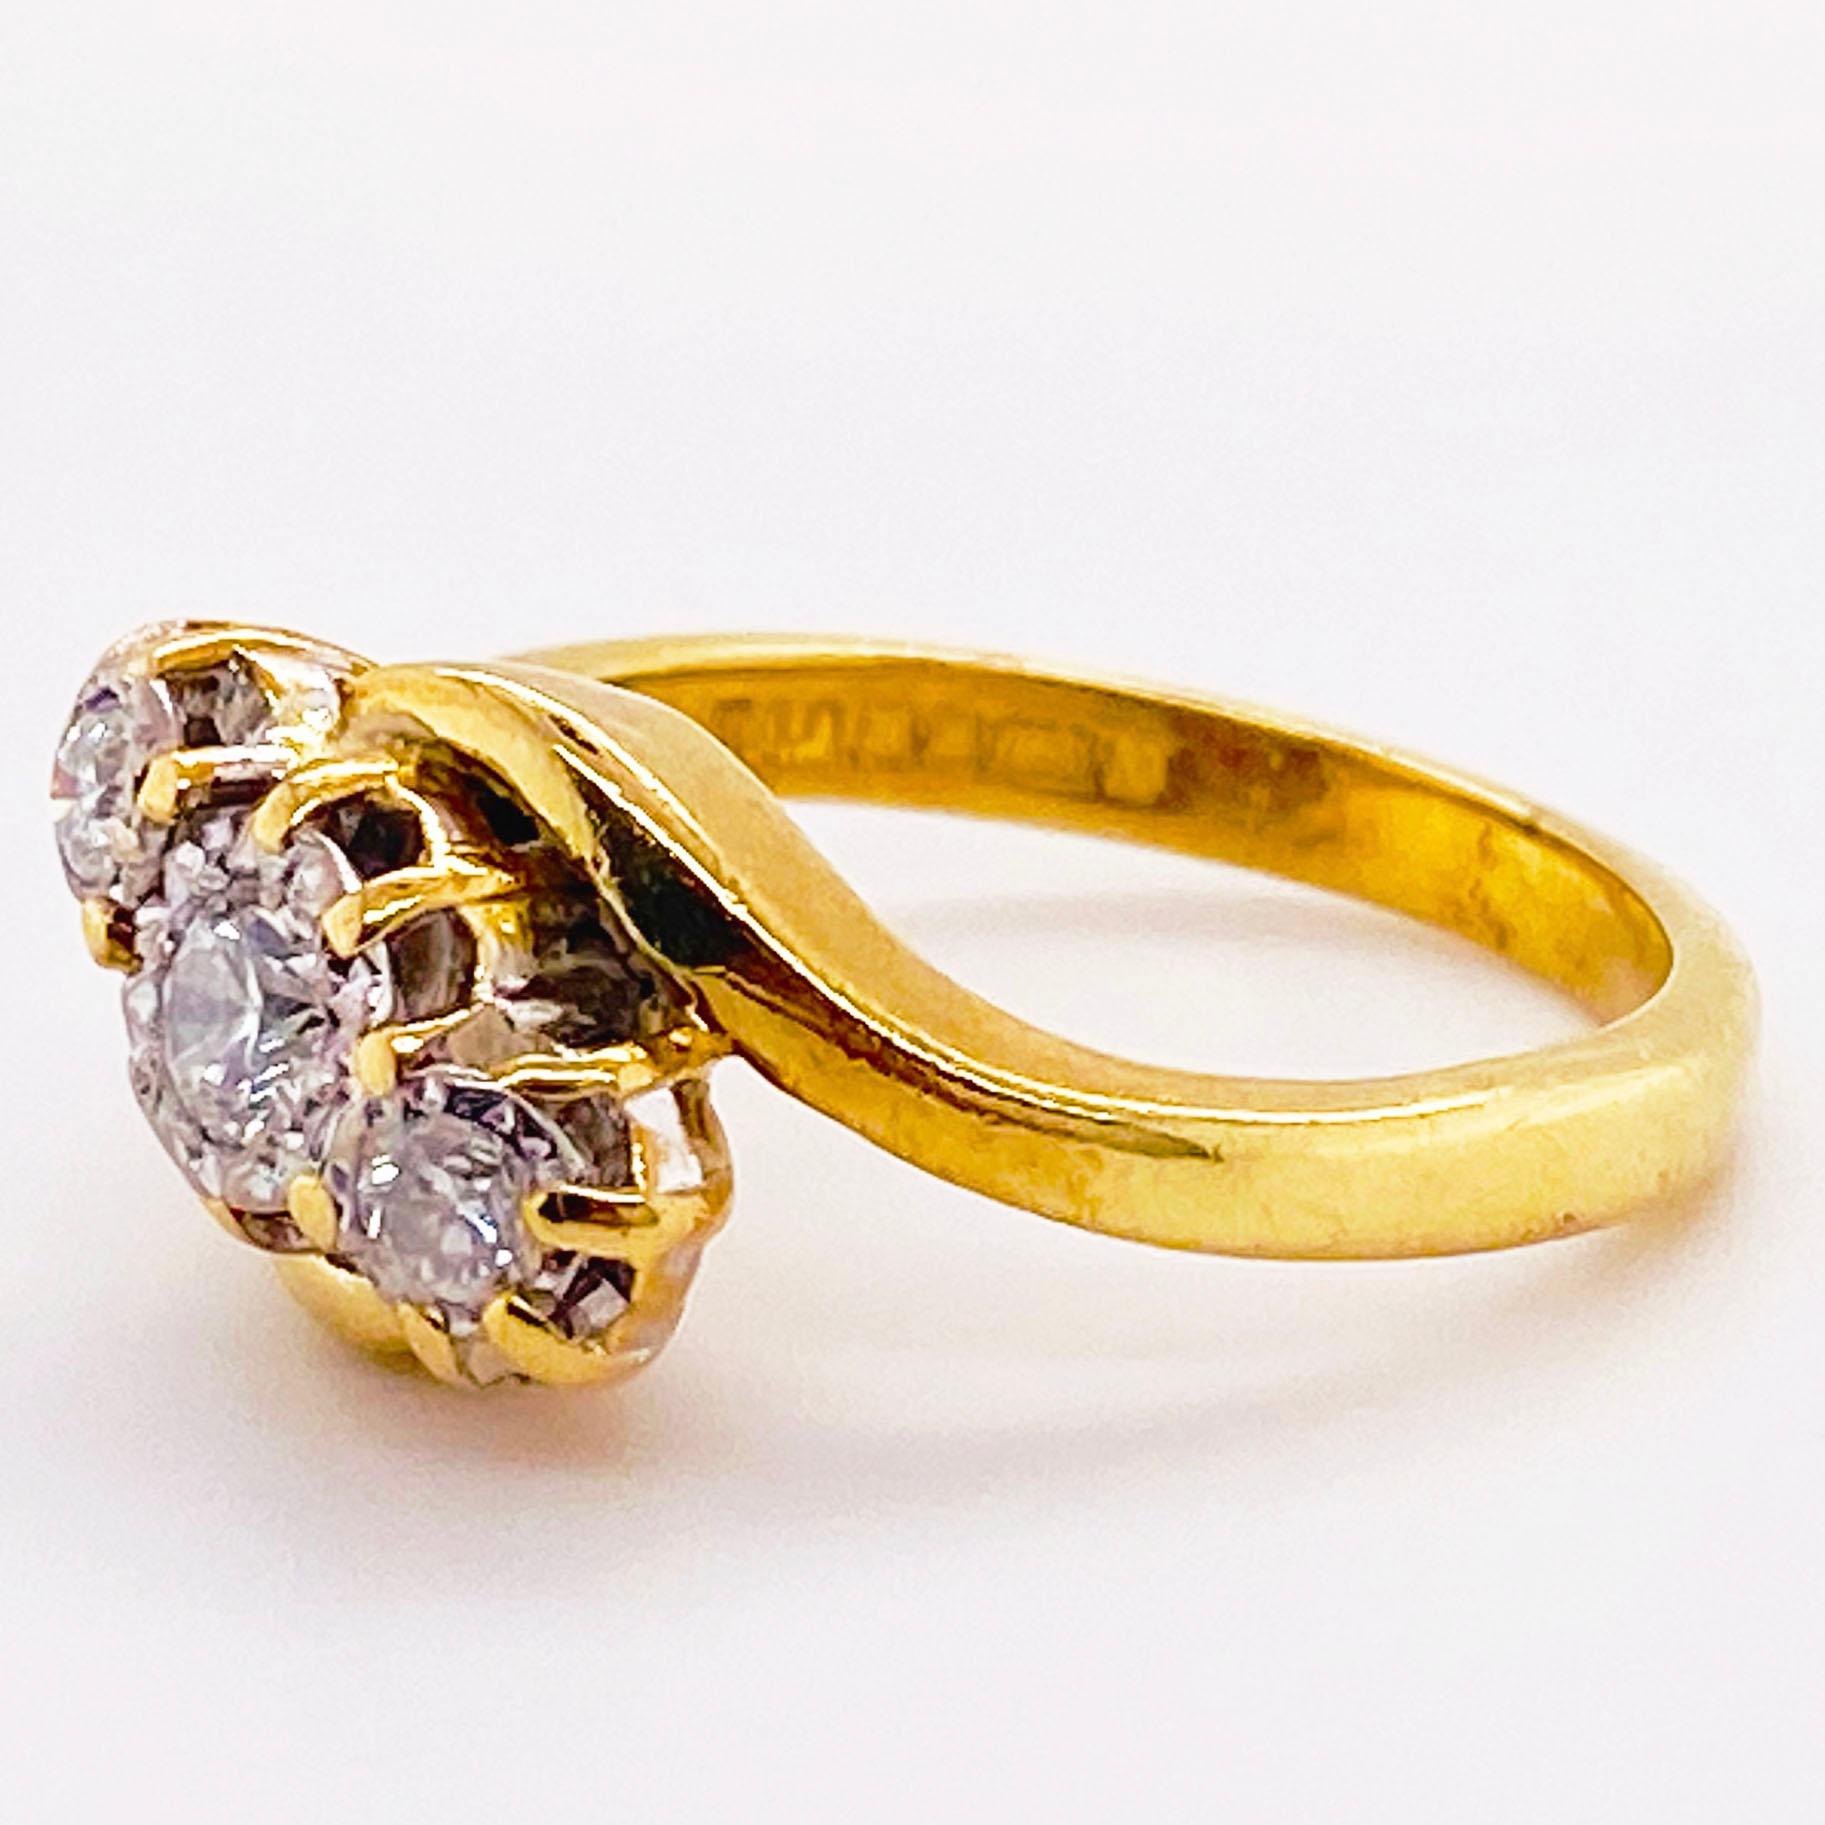 Vergangene, gegenwärtige und zukünftige Ringe werden seit Generationen als Zeichen des Lebens und der ewigen Liebe getragen. Diese Ringe sind so besonders und gefühlvoll, dass sie immer noch ein beliebtes Design für Verlobungsringe sind. Dieser